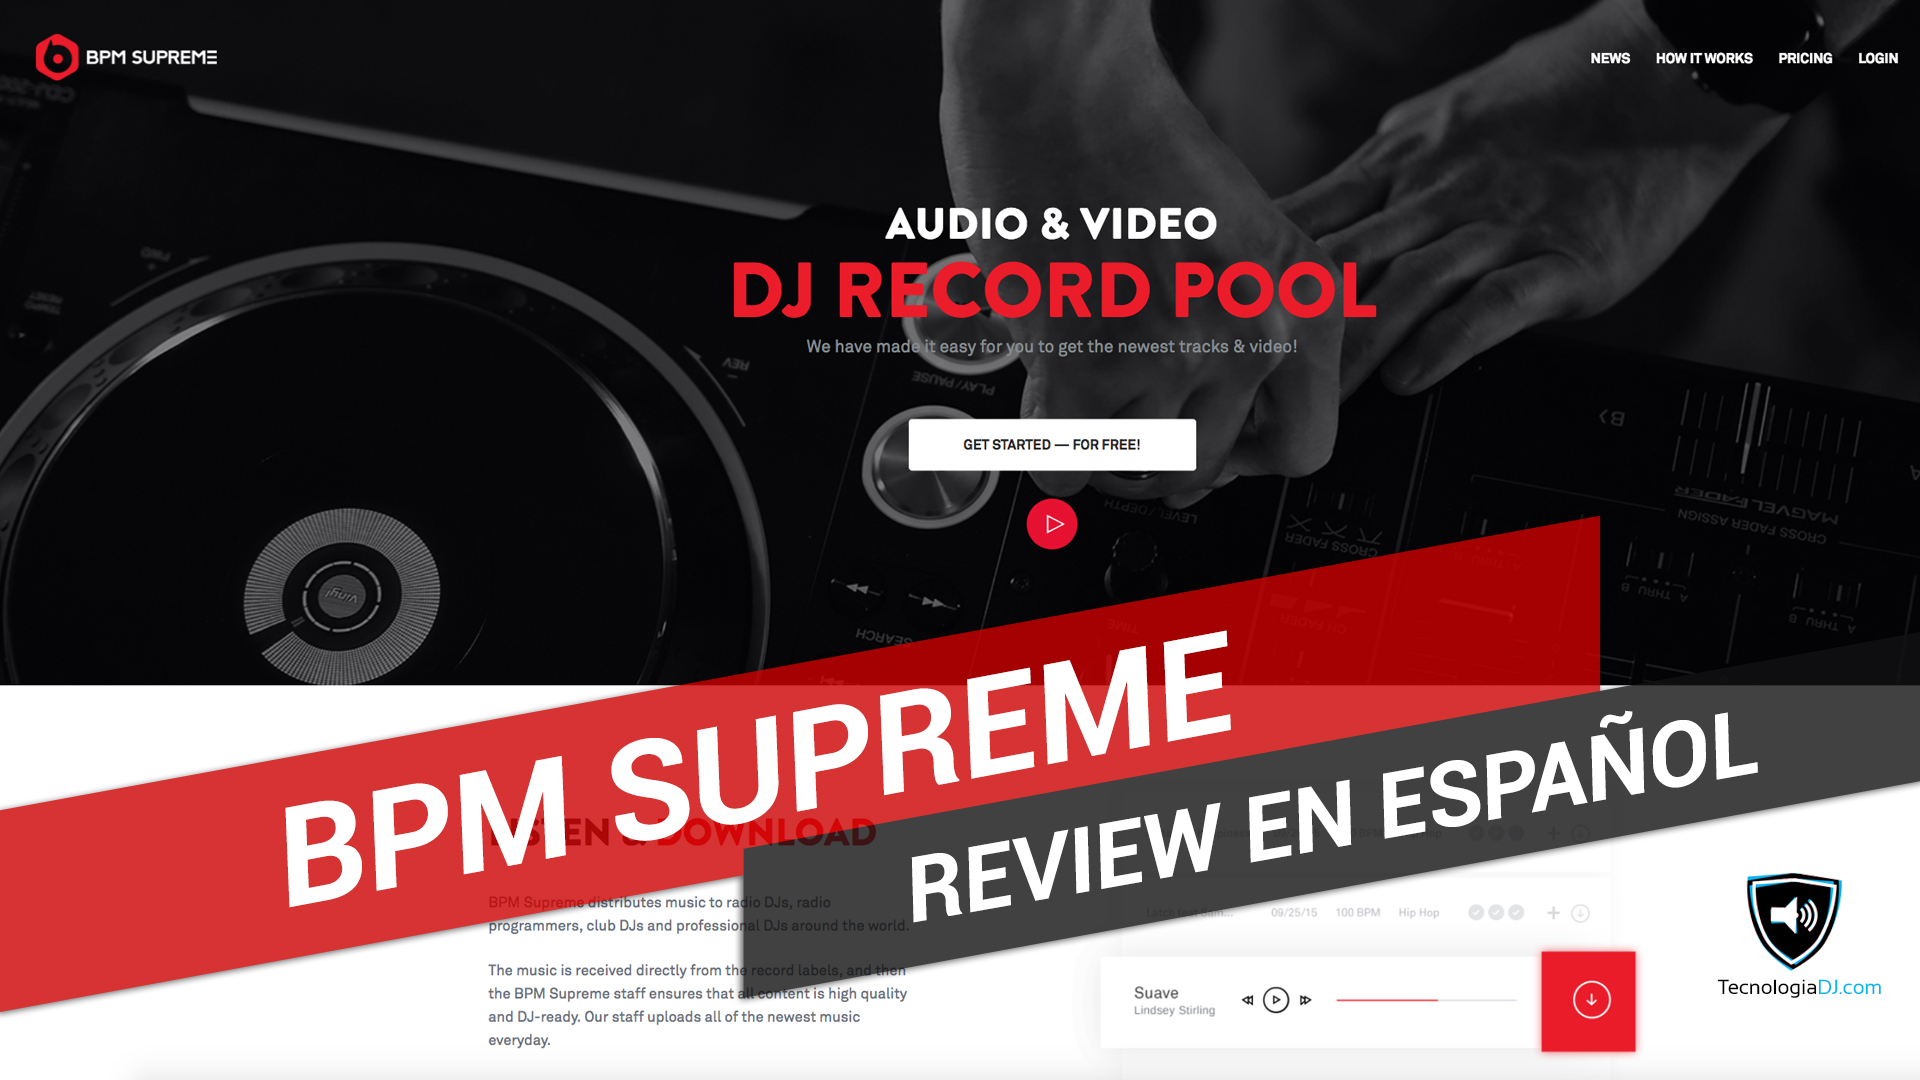 Review en español record pool BPM Supreme